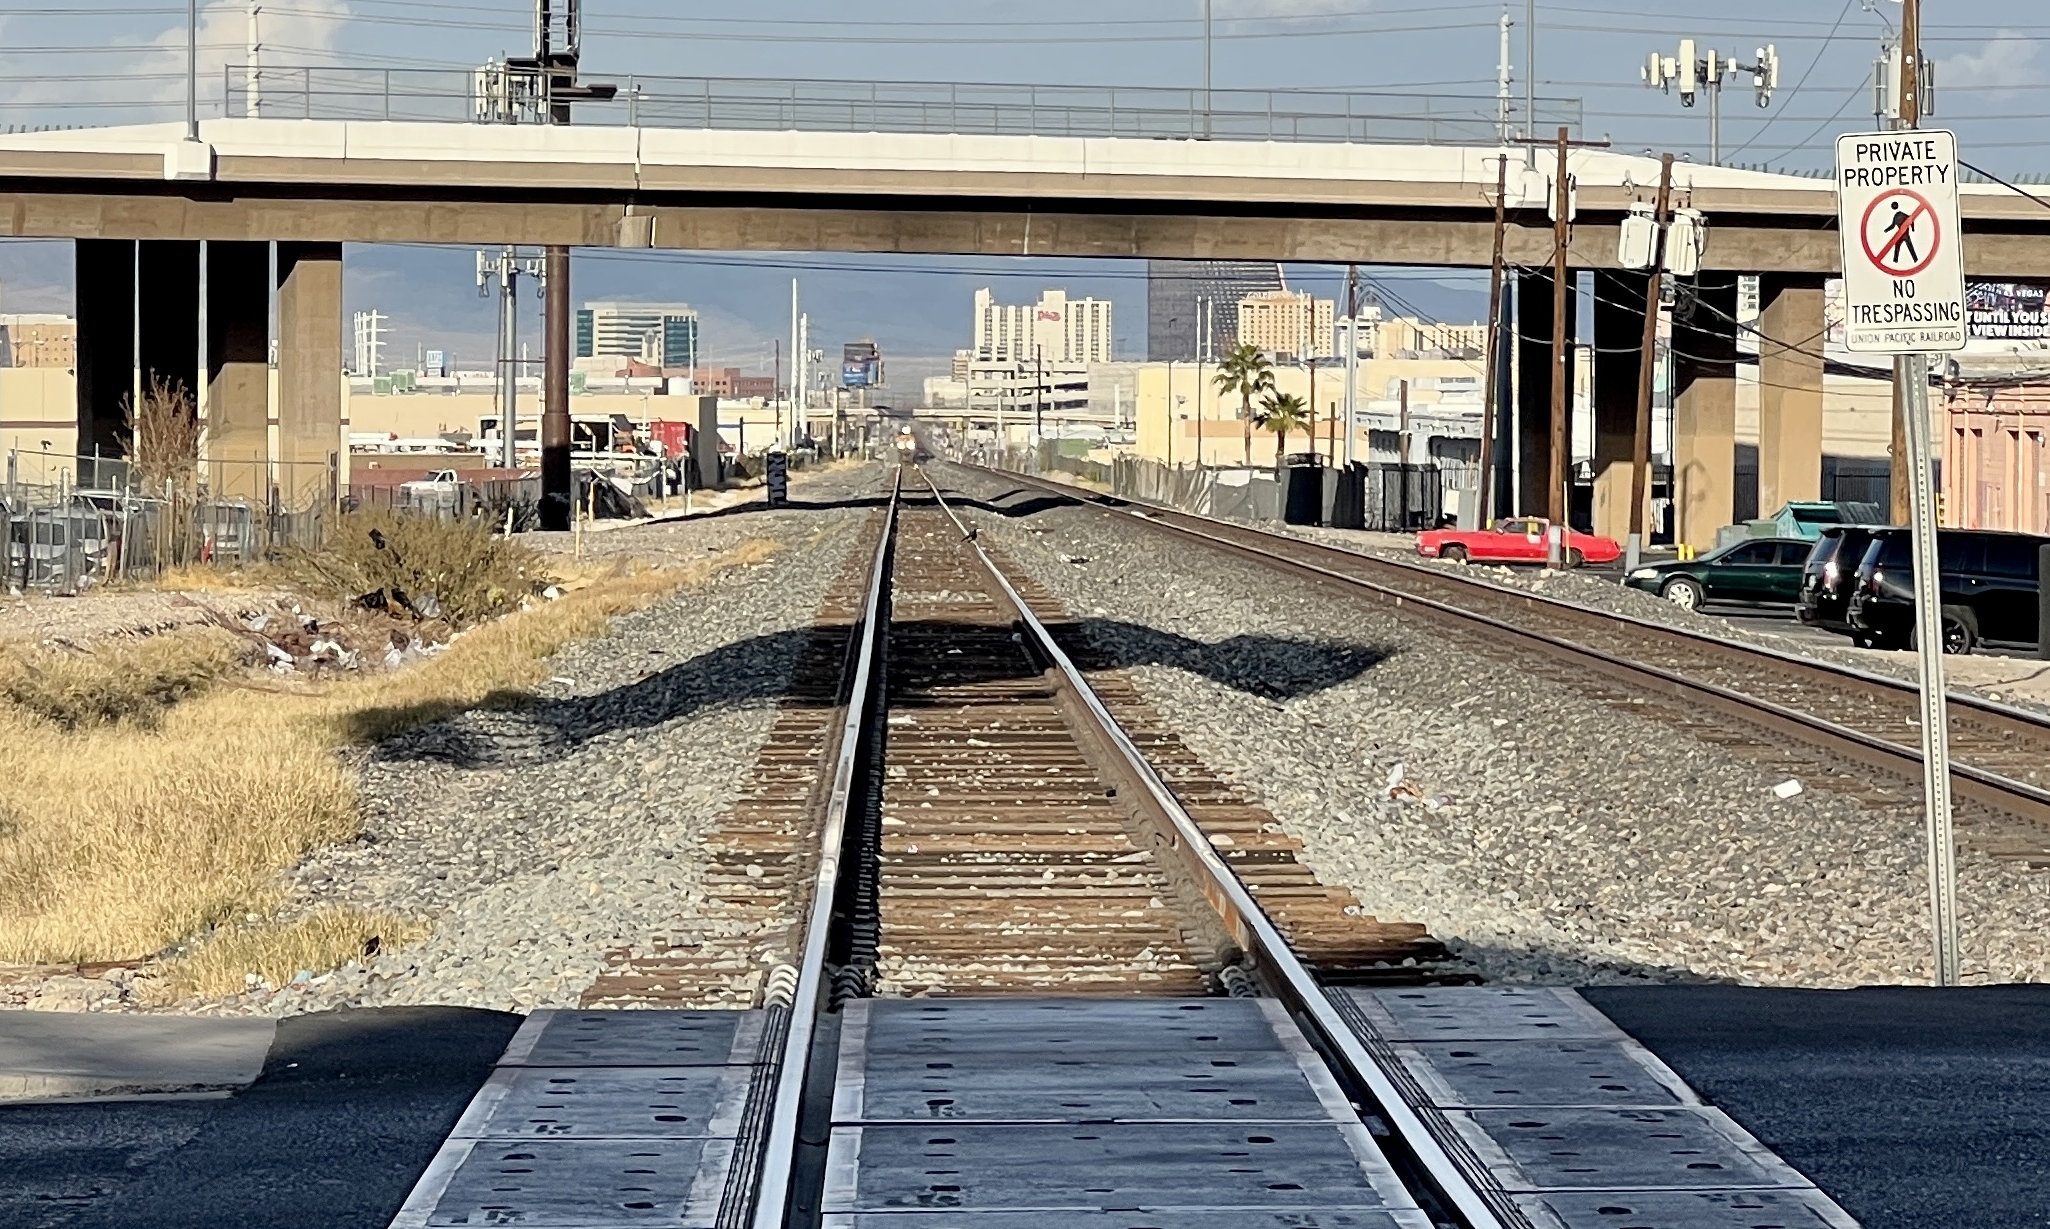 Ich stehe auf dem Bahnübergang einer zweispurigen Eisenbahn. Auf der linken Spur sieht man undeutlich die Konturen eines herannahenden Zugs.